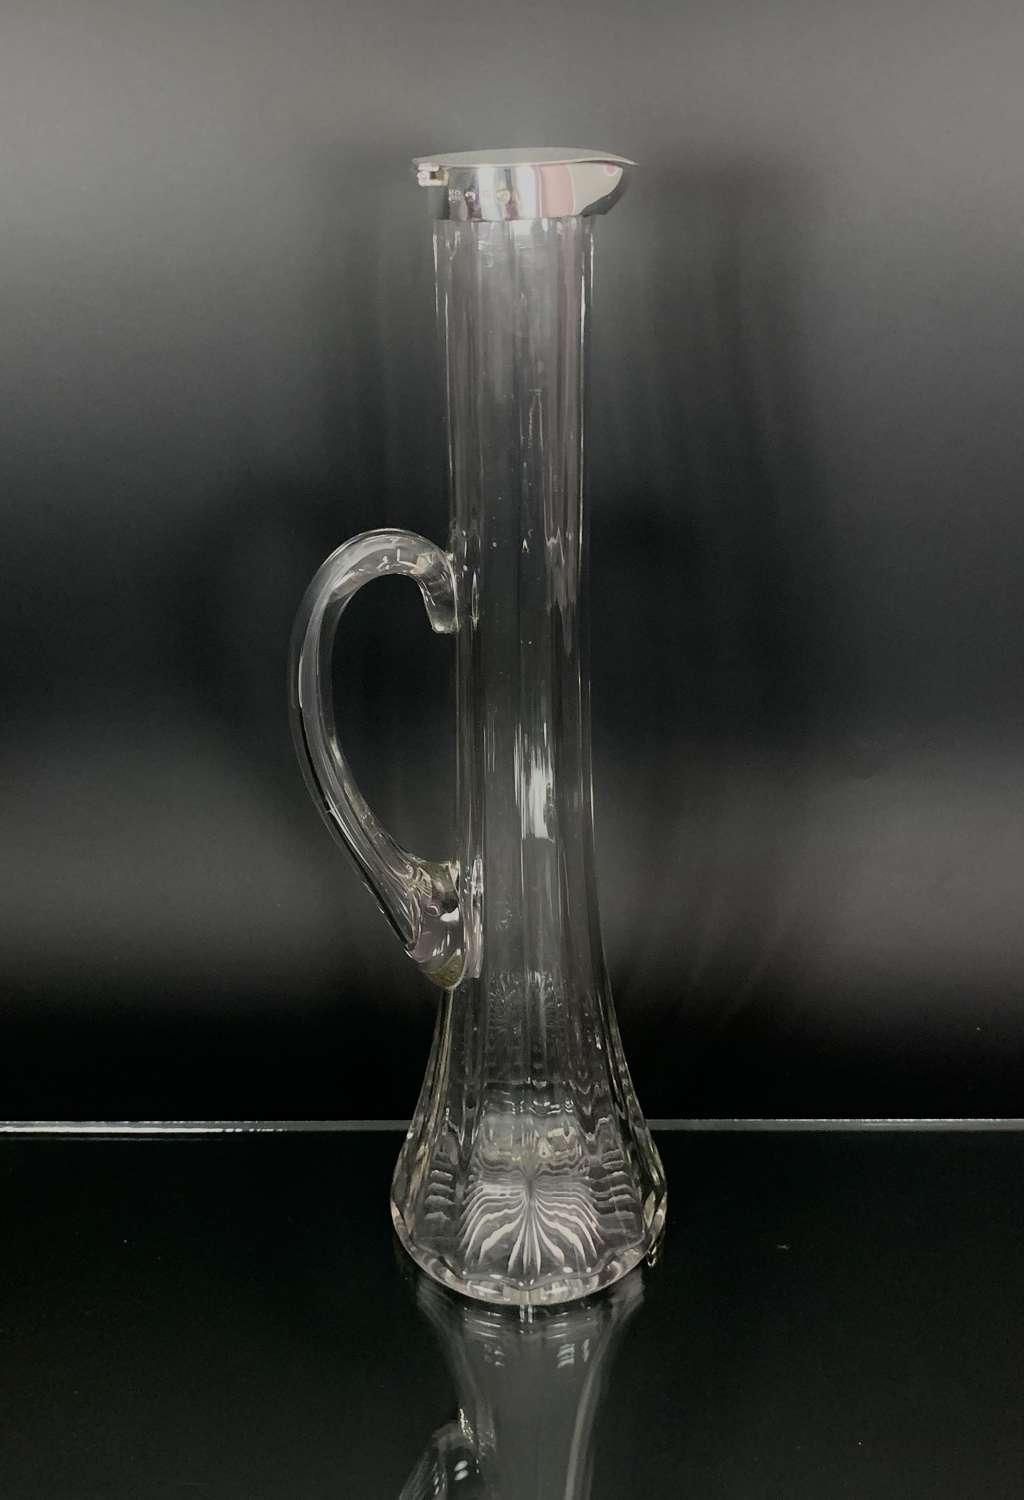 Art Nouveau claret jug by Heath & Middleton dated 1891